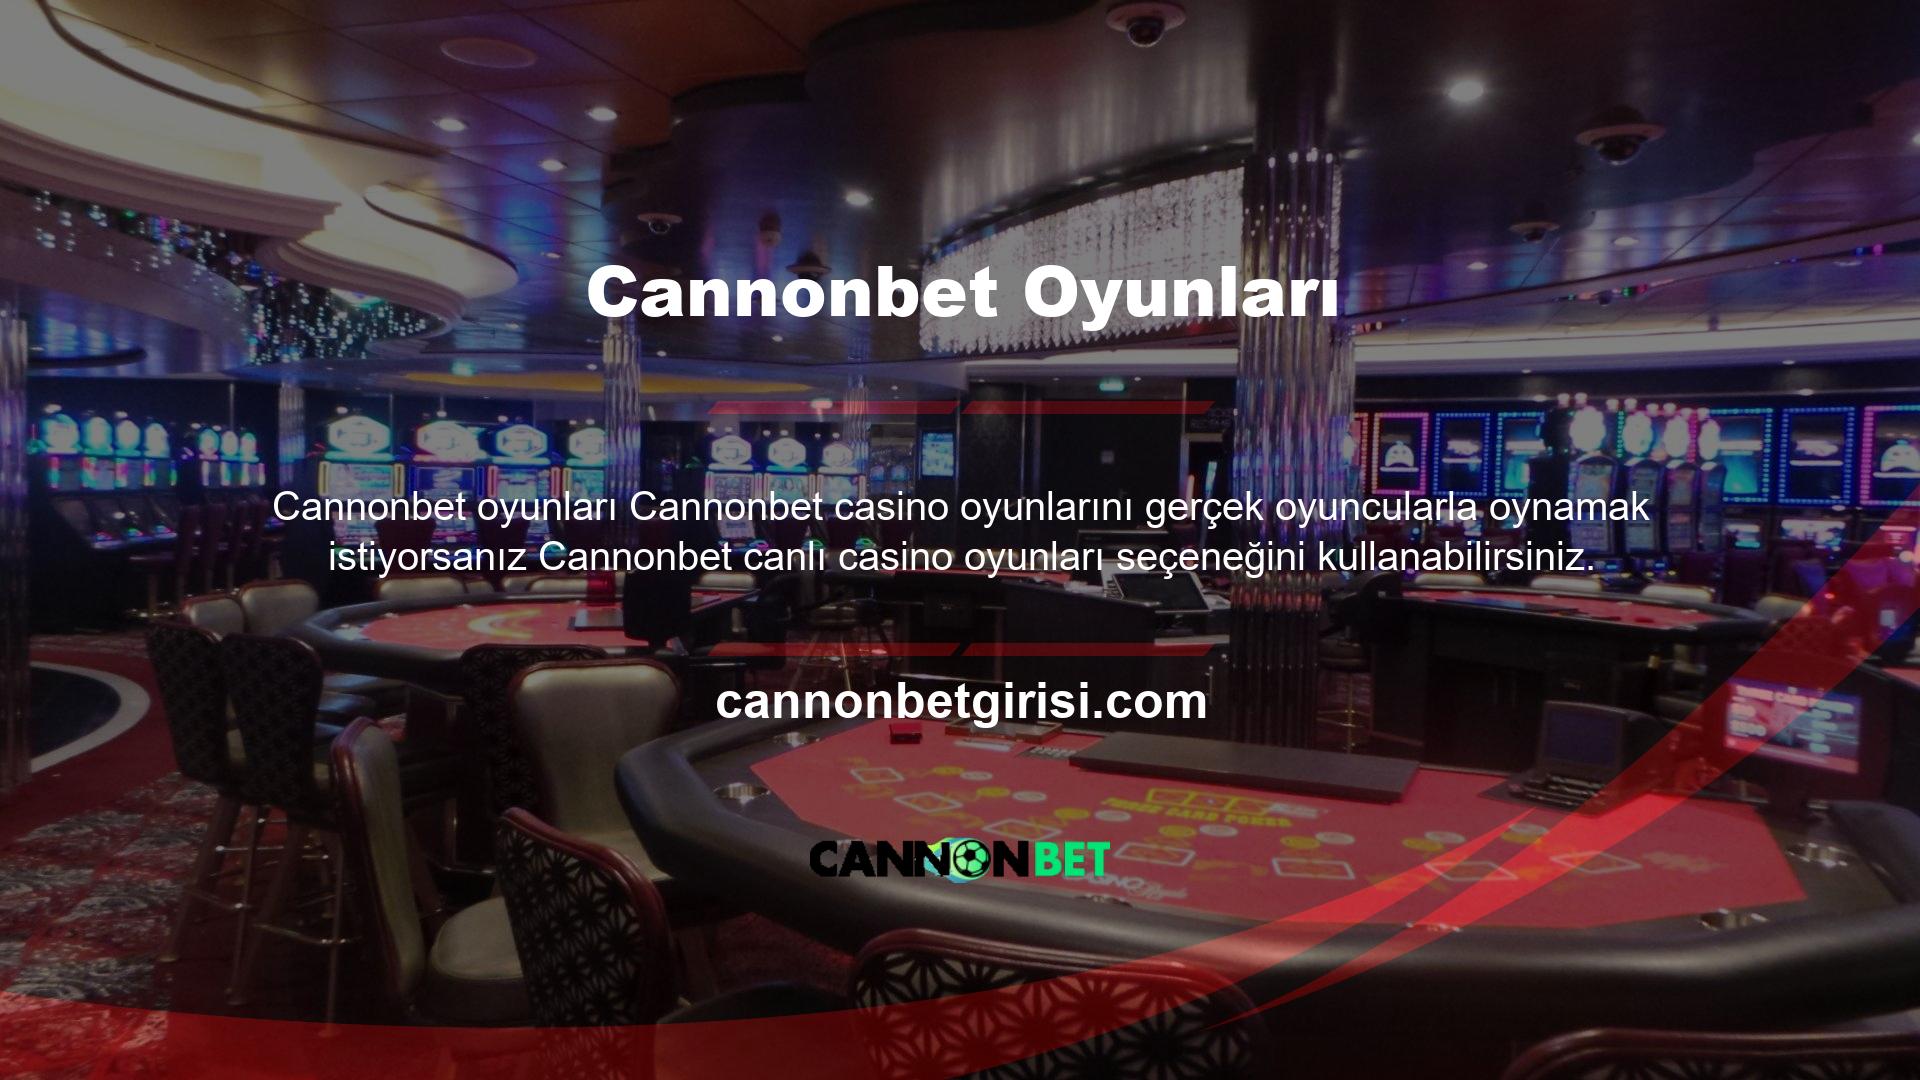 Kuruluşun resmi web sitesi üzerinden kayıt olduktan sonra girişte bulunan canlı casino bölümüne tıkladığınızda rulet, blackjack gibi çeşitli oyunları göreceksiniz